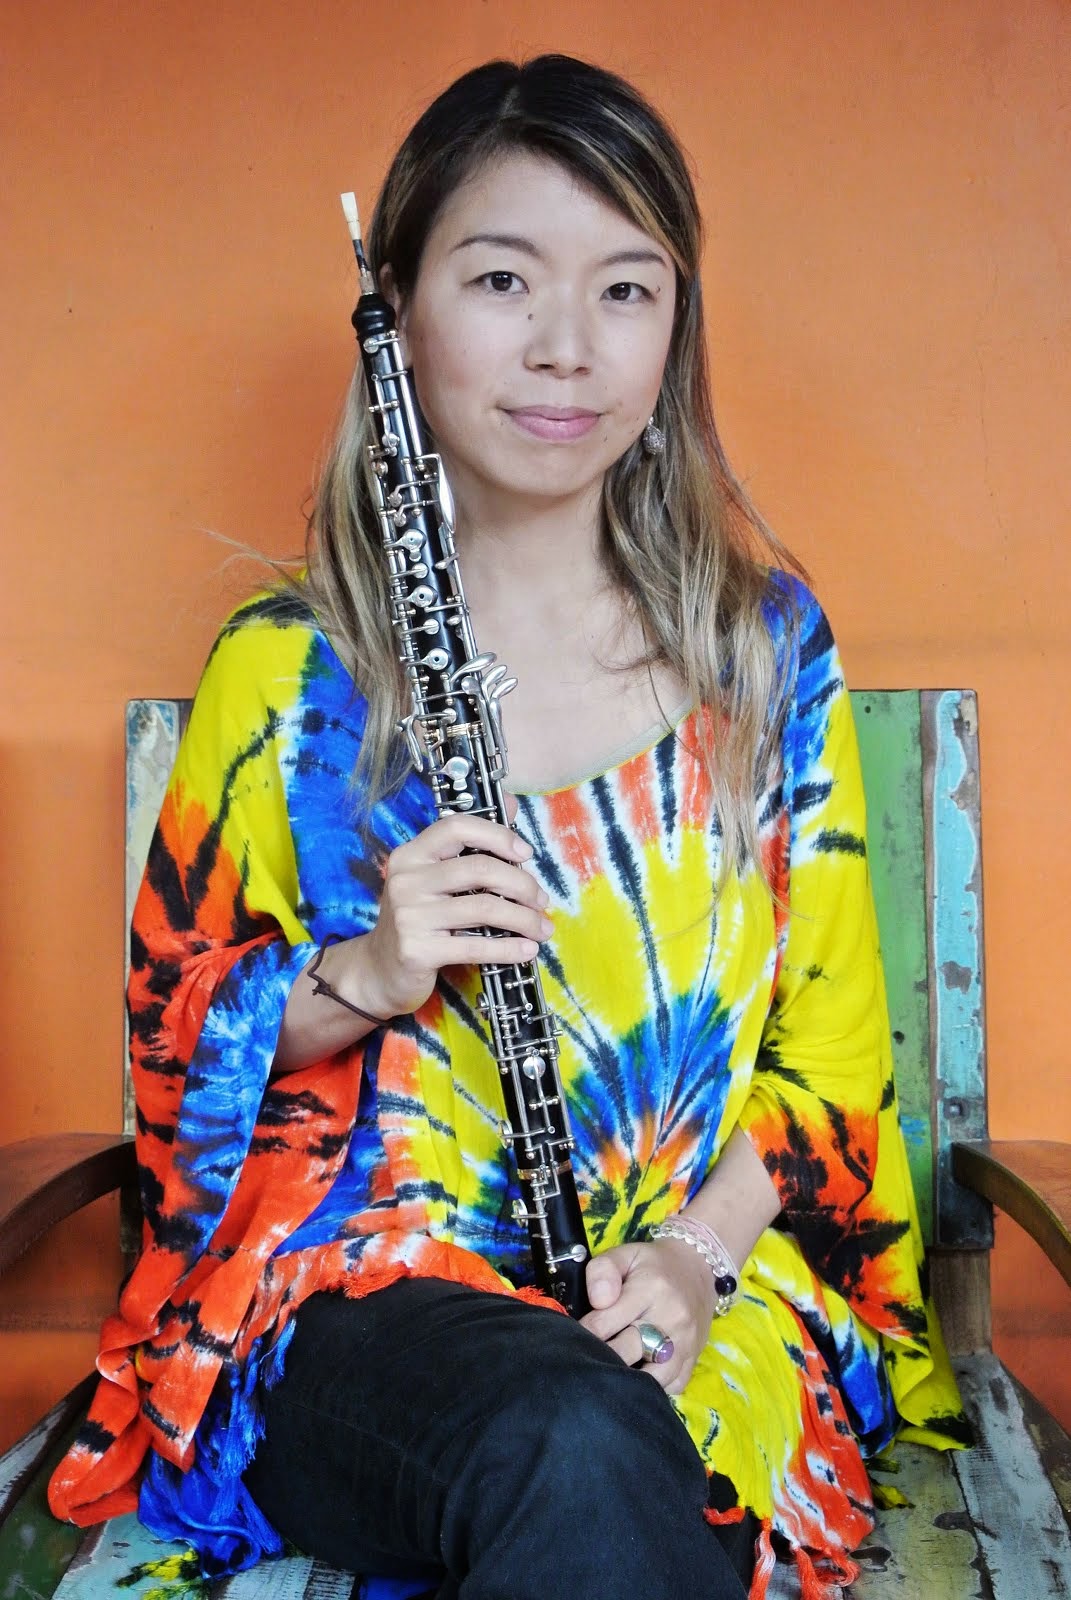 tomoca play oboe